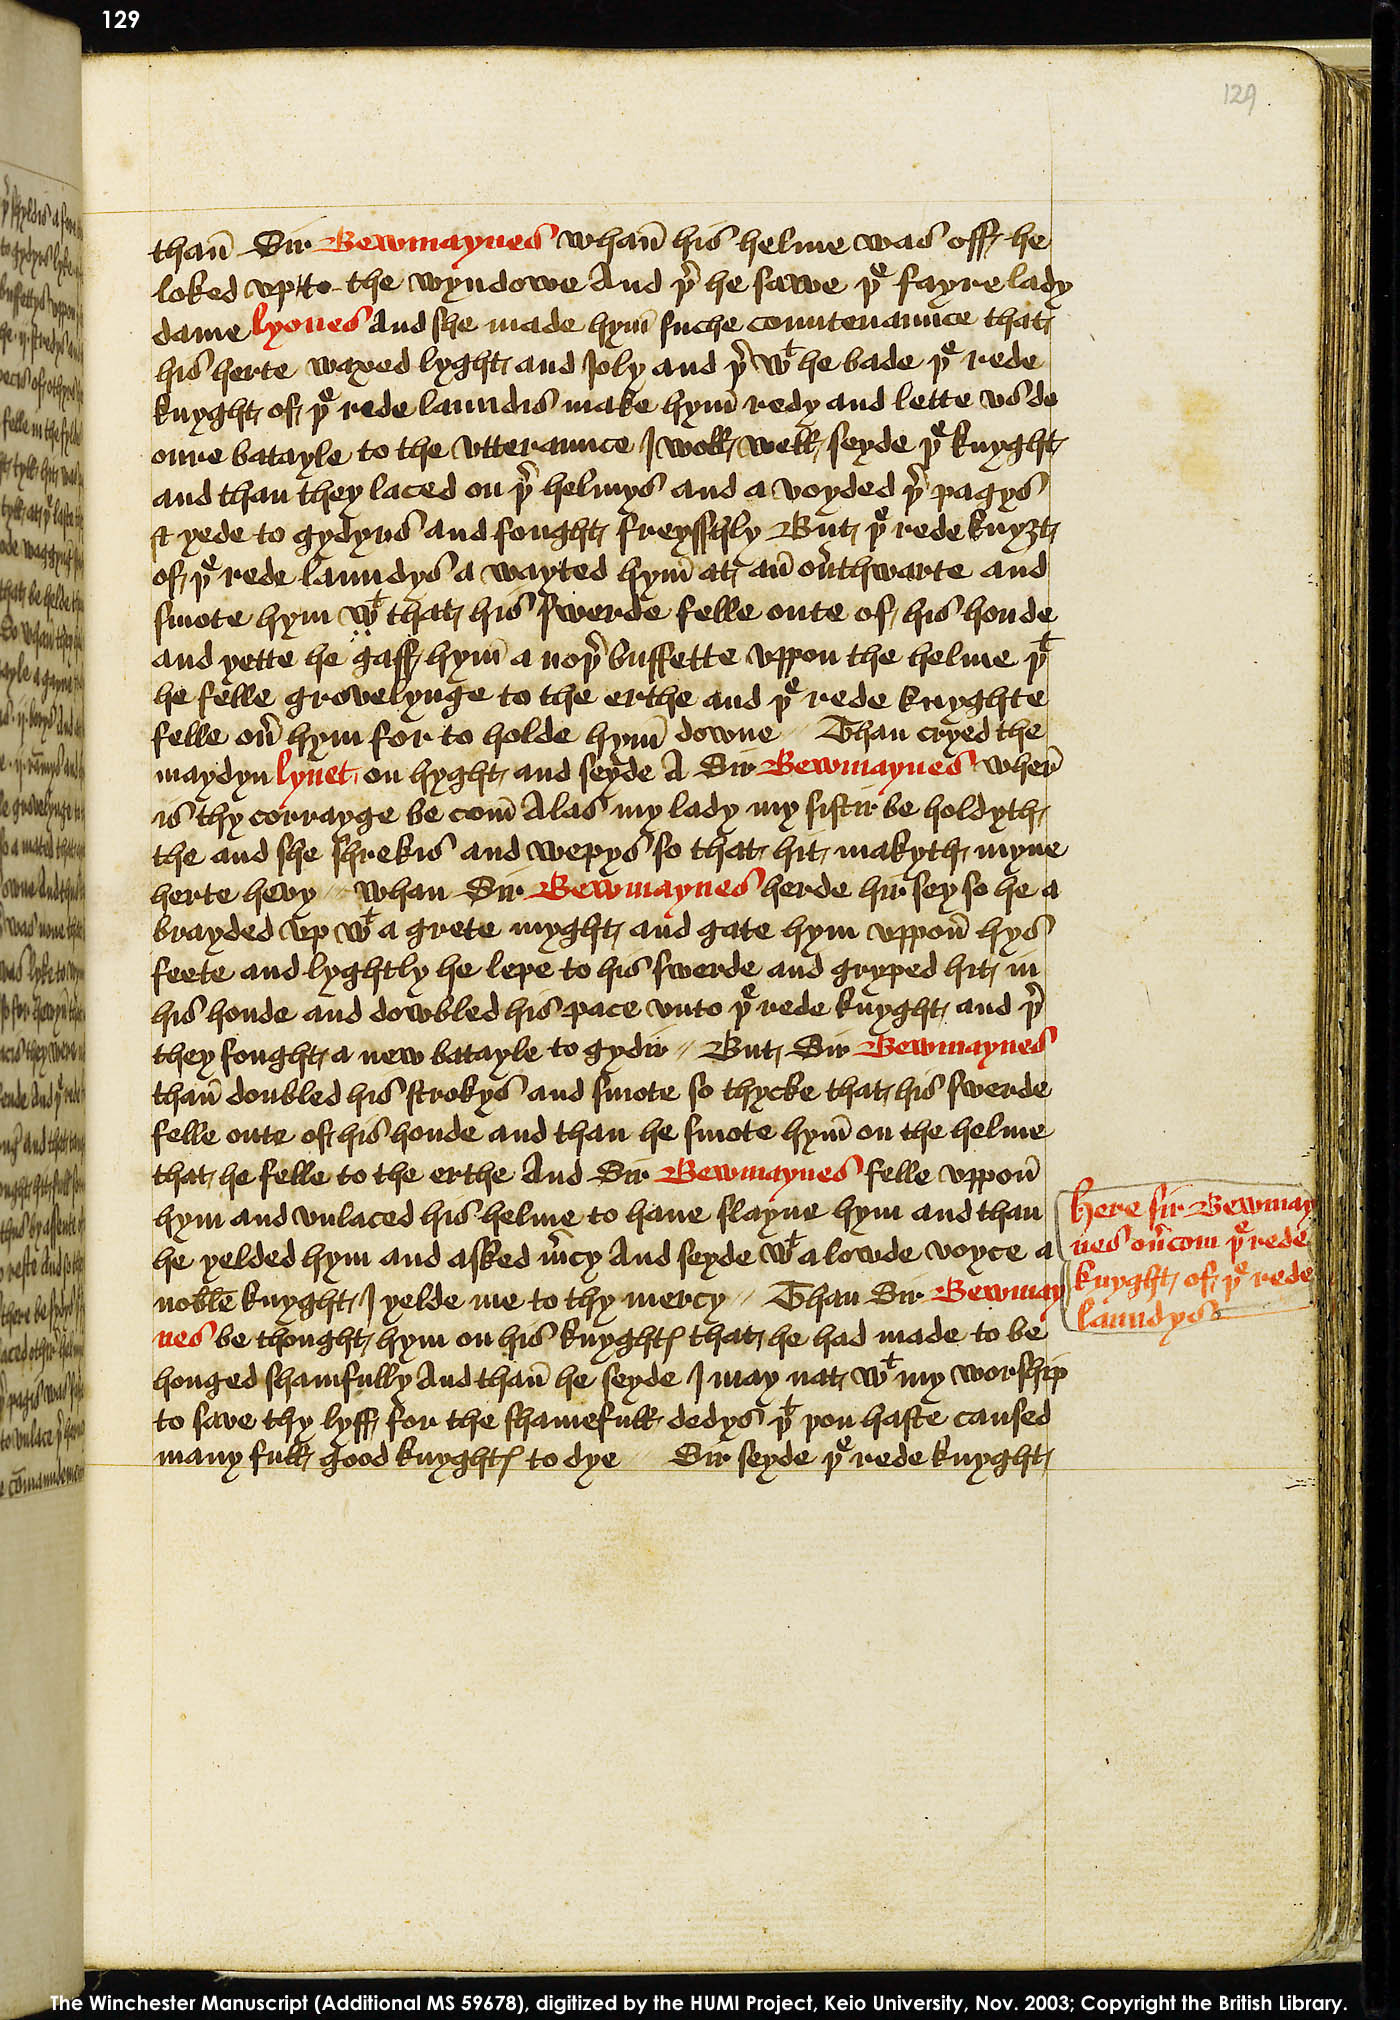 Folio 129r